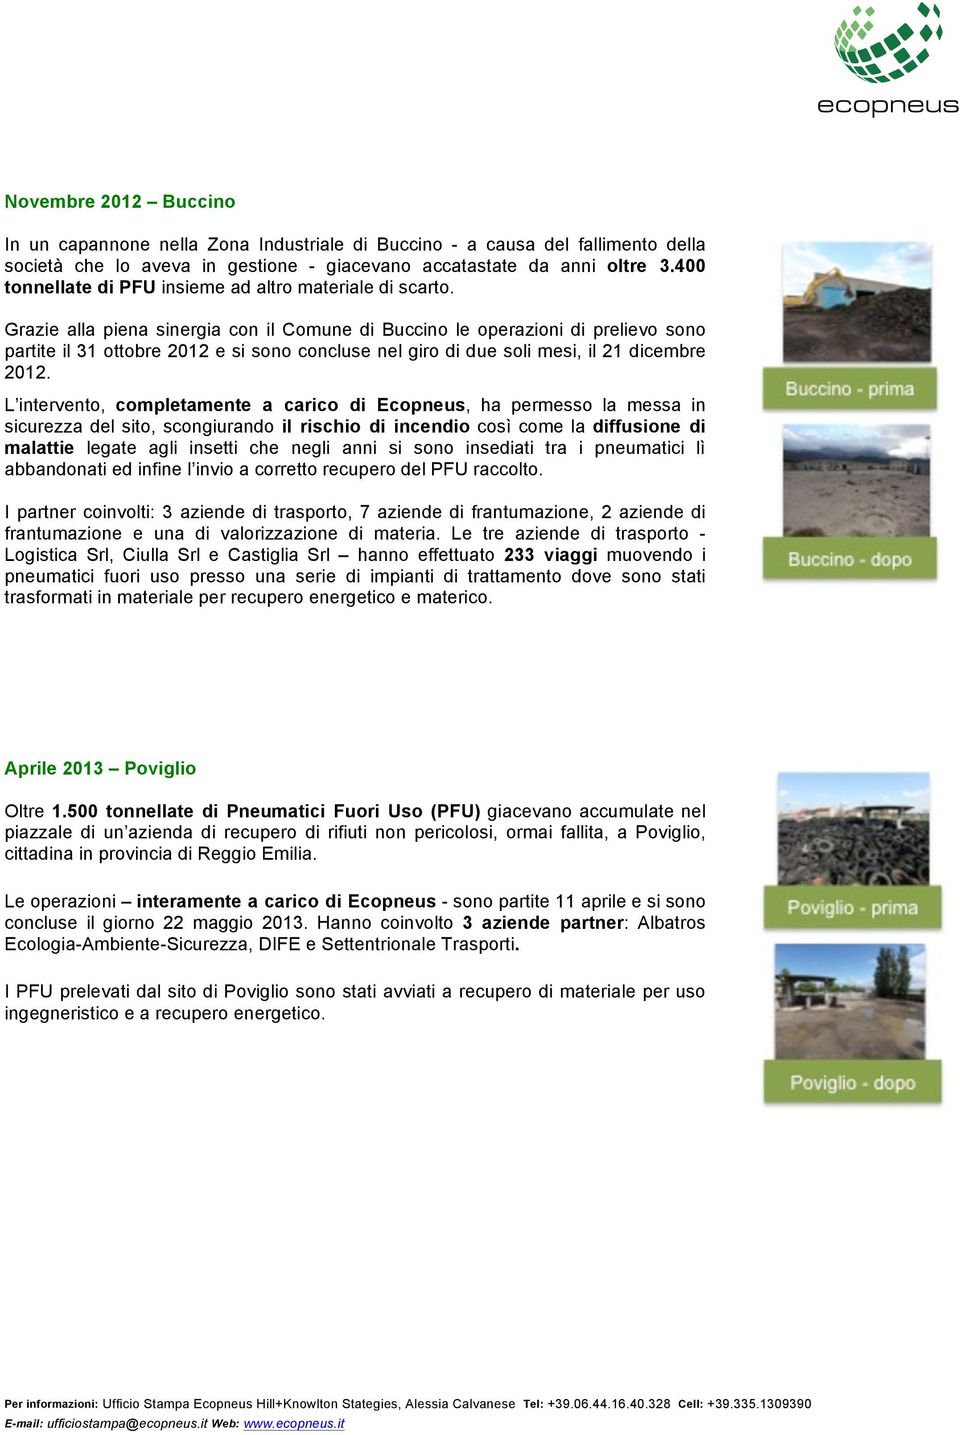 Grazie alla piena sinergia con il Comune di Buccino le operazioni di prelievo sono partite il 31 ottobre 2012 e si sono concluse nel giro di due soli mesi, il 21 dicembre 2012.